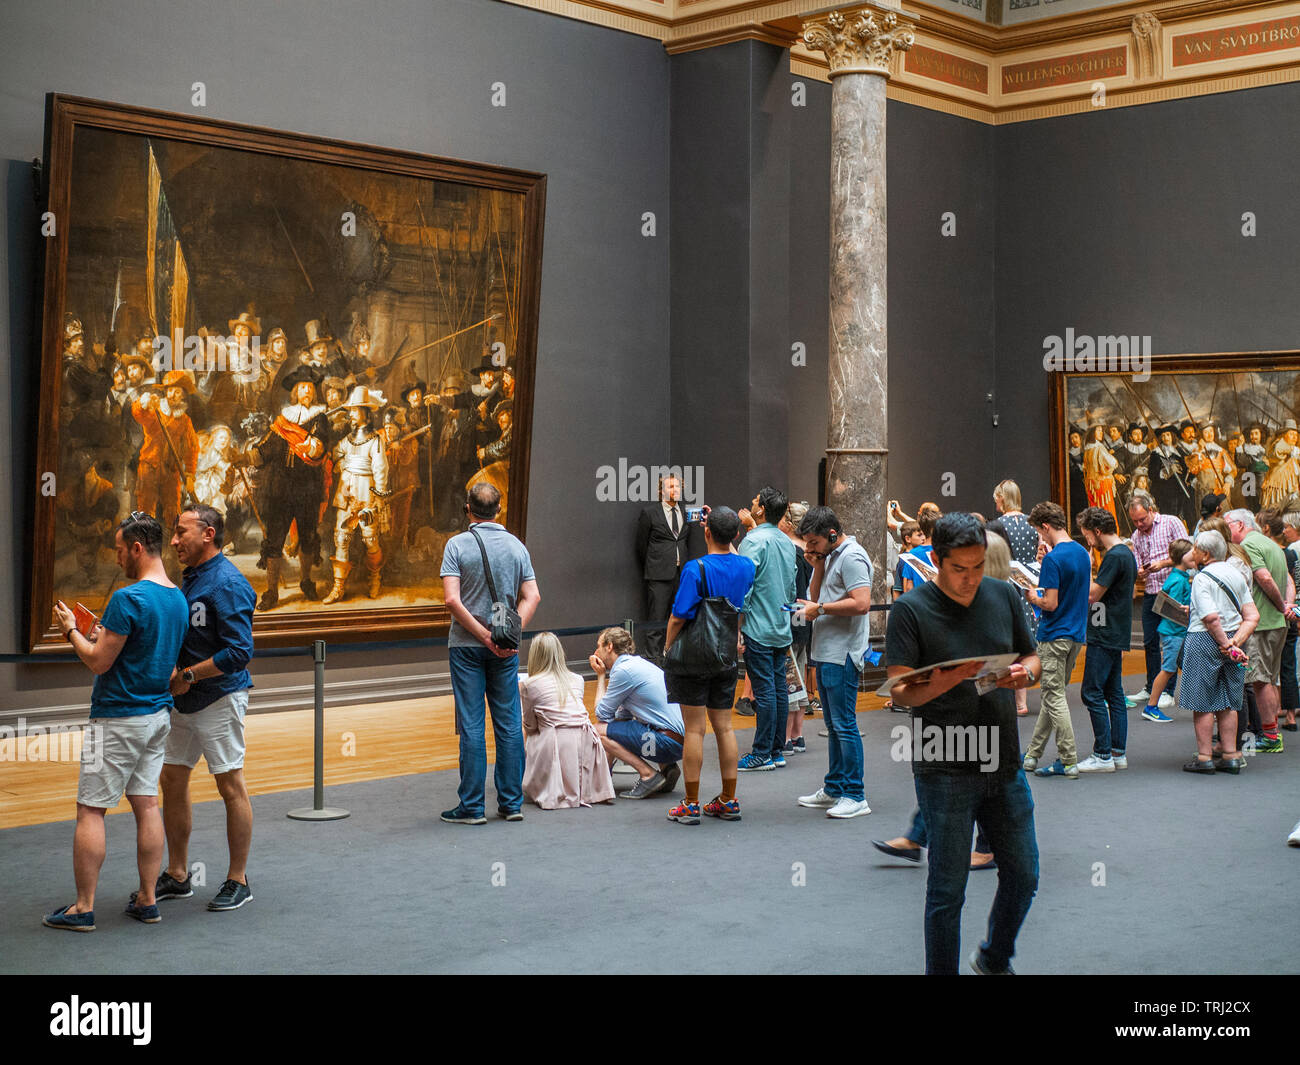 Les touristes à la recherche à la Ronde de nuit, une peinture de Rembrandt Harmenszoon van Rijn, au Rijksmuseum à Amsterdam, aux Pays-Bas. Rembrandt est consi Banque D'Images